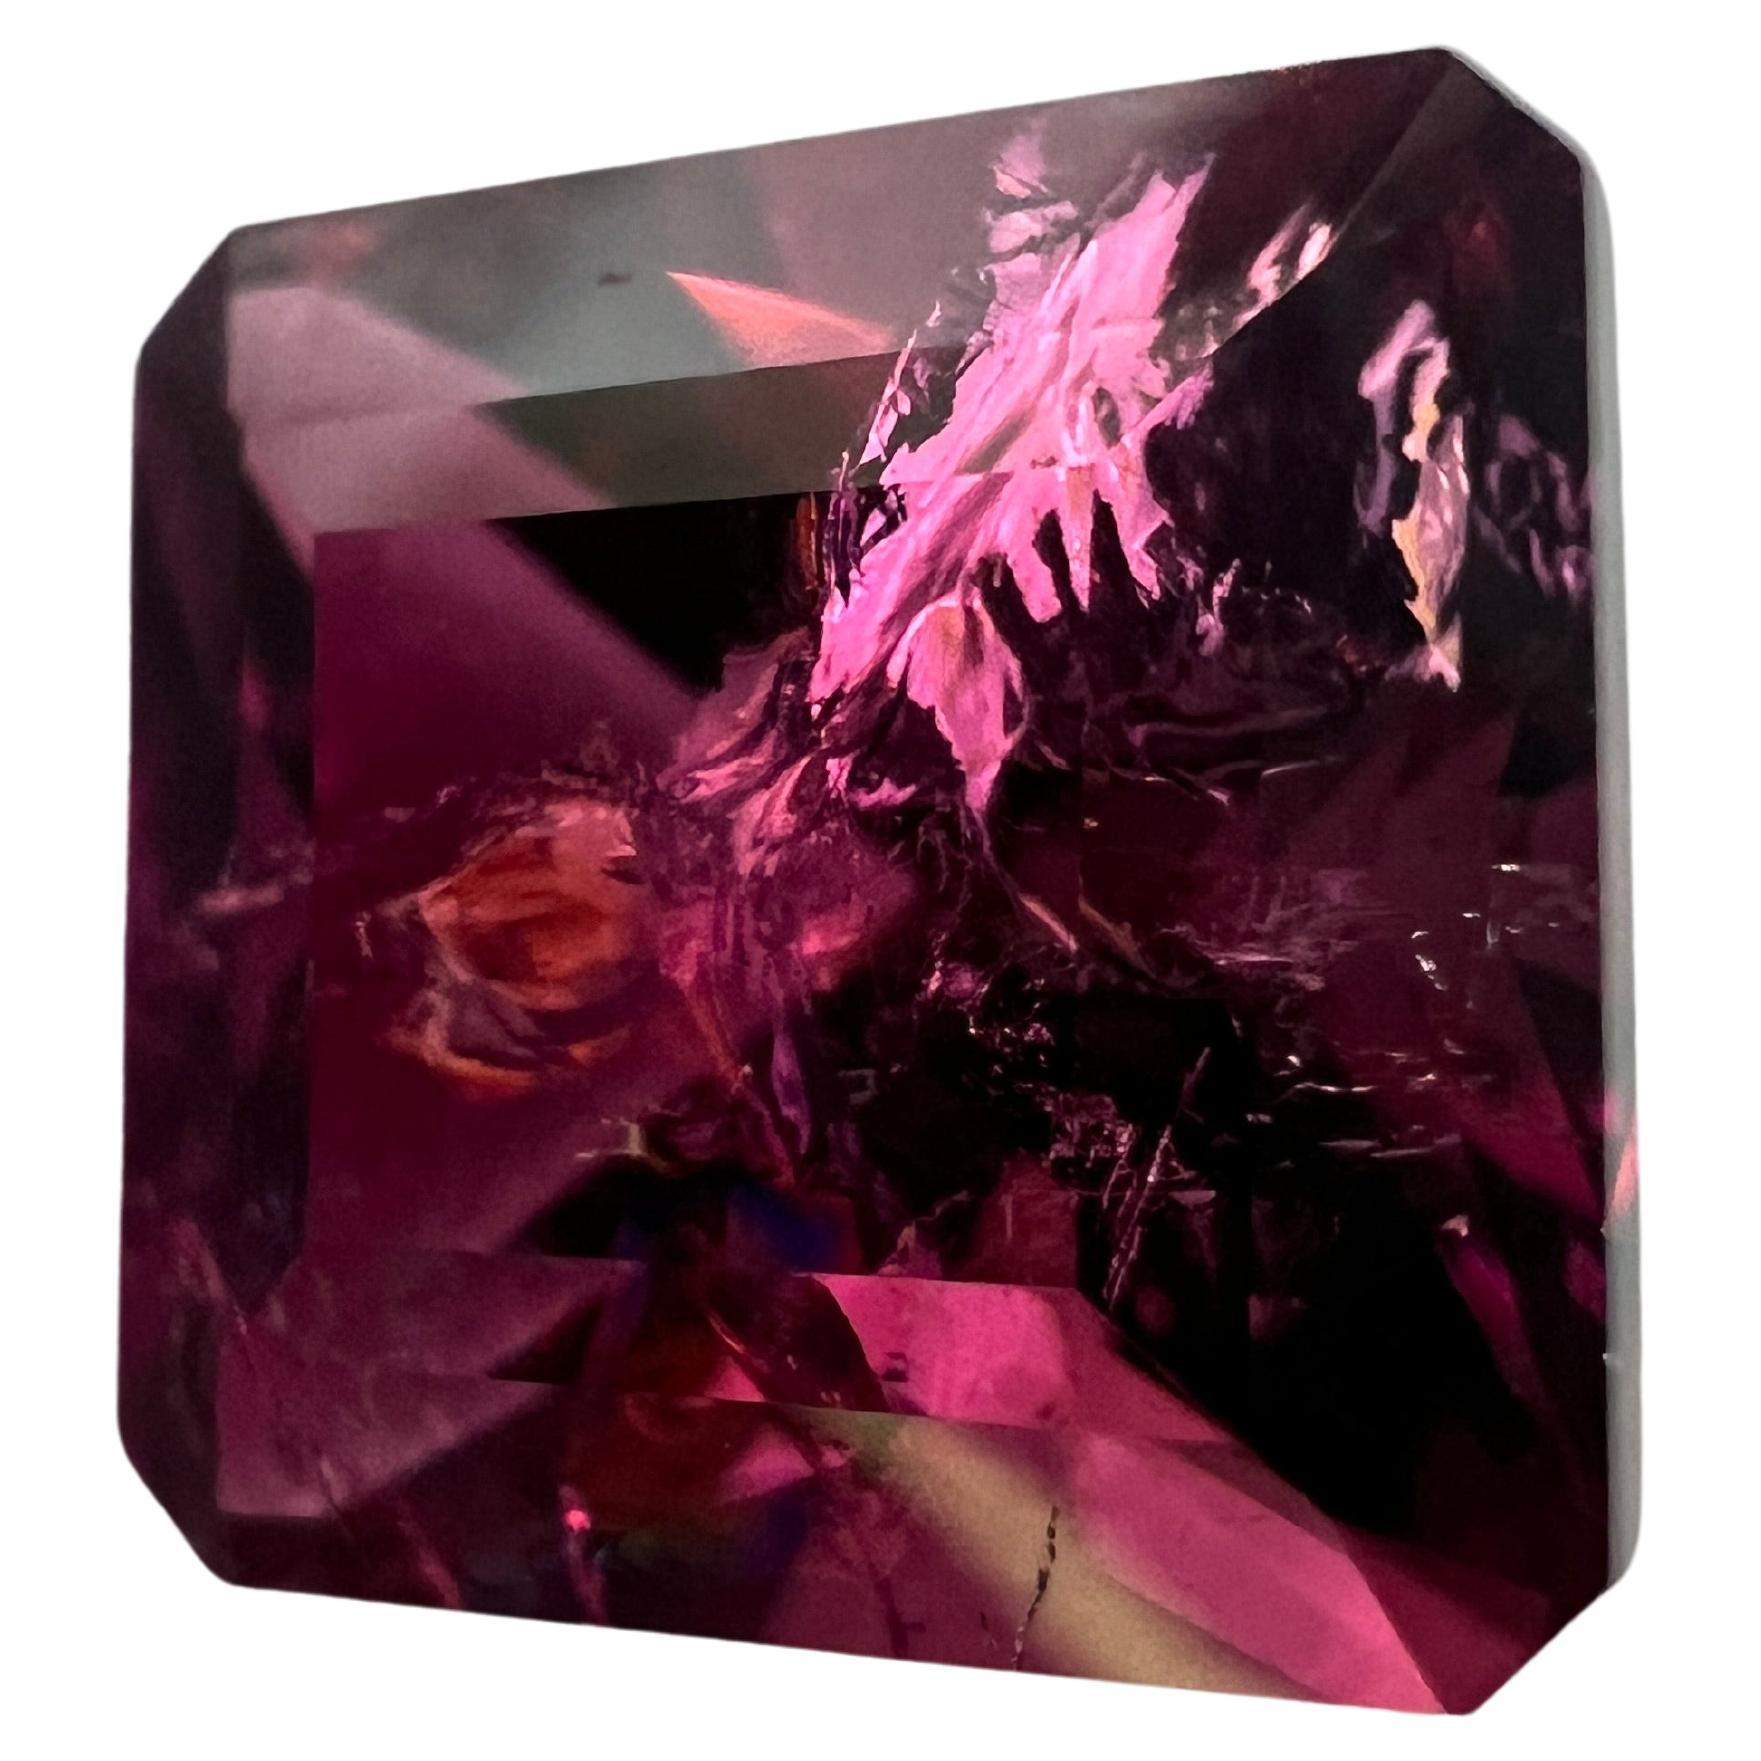 Unser 8,75ct Pink Asscher Rubellit ist ein Schatz von unvergleichlicher Schönheit. Der fachmännisch im prestigeträchtigen Asscher-Stil geschliffene Edelstein verfügt über stufenförmig geschliffene Facetten, die den Blick nach innen lenken und die